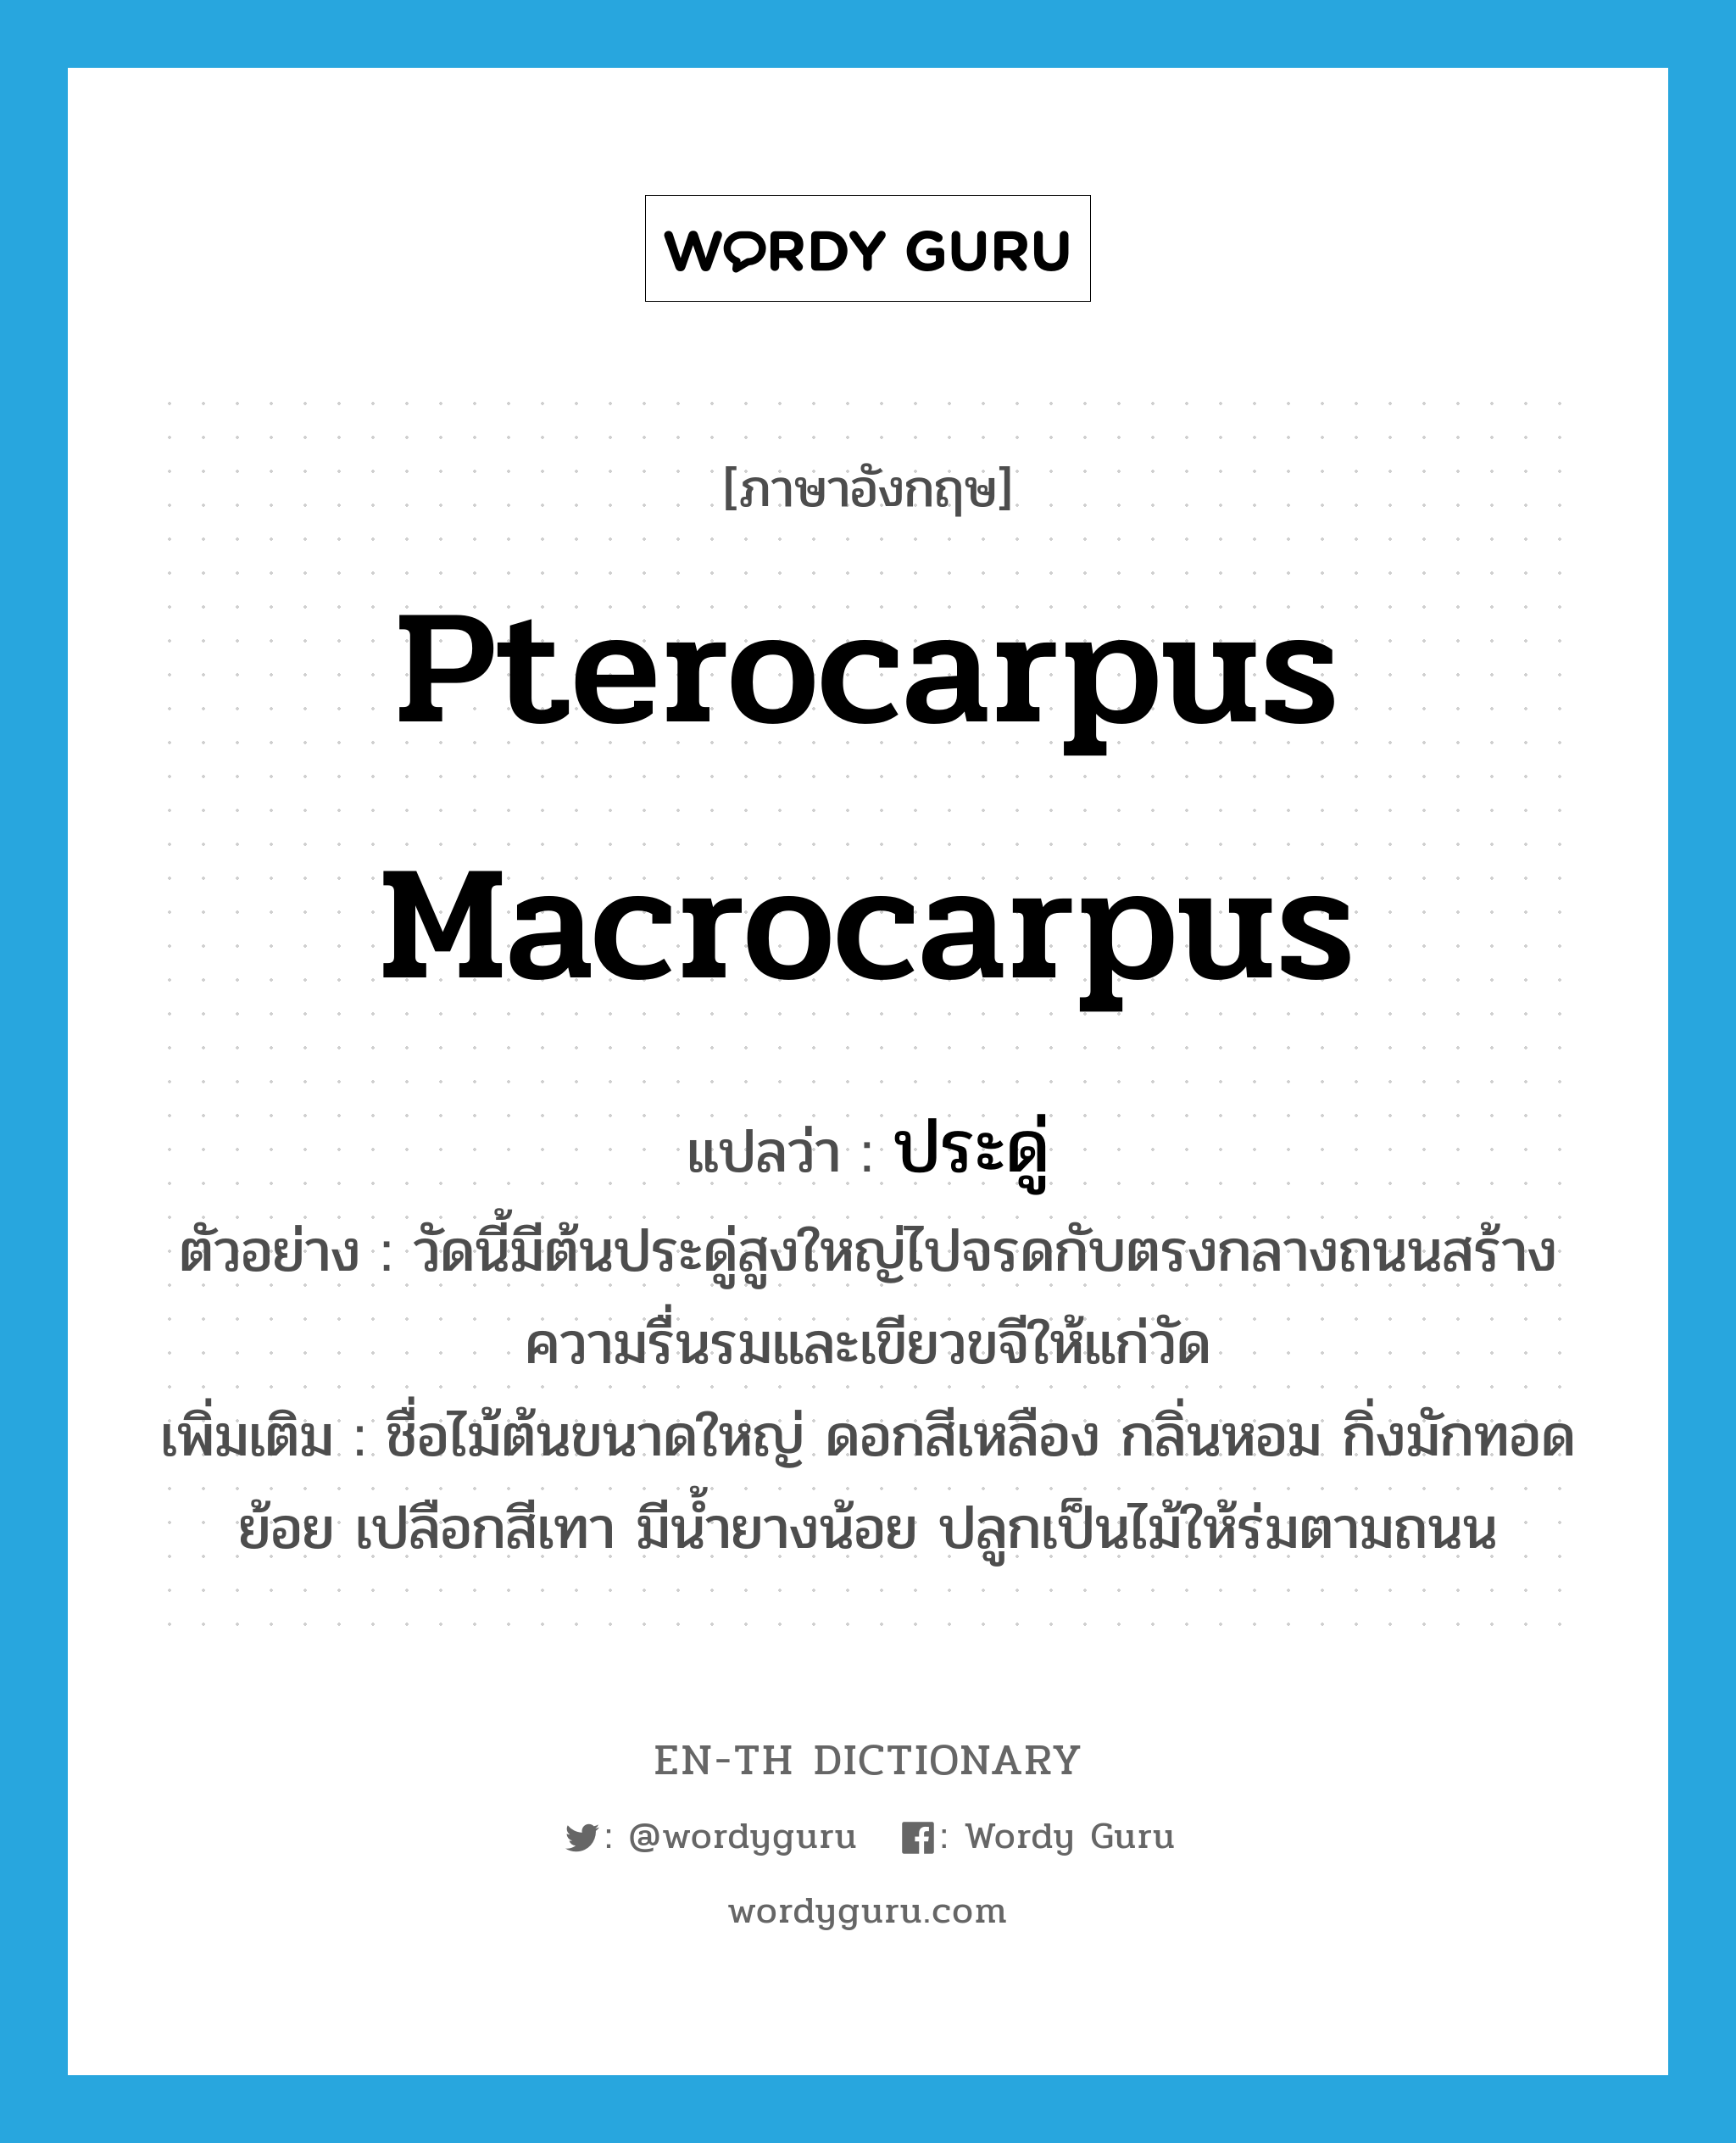 Pterocarpus macrocarpus แปลว่า?, คำศัพท์ภาษาอังกฤษ Pterocarpus macrocarpus แปลว่า ประดู่ ประเภท N ตัวอย่าง วัดนี้มีต้นประดู่สูงใหญ่ไปจรดกับตรงกลางถนนสร้างความรื่นรมและเขียวขจีให้แก่วัด เพิ่มเติม ชื่อไม้ต้นขนาดใหญ่ ดอกสีเหลือง กลิ่นหอม กิ่งมักทอดย้อย เปลือกสีเทา มีน้ำยางน้อย ปลูกเป็นไม้ให้ร่มตามถนน หมวด N